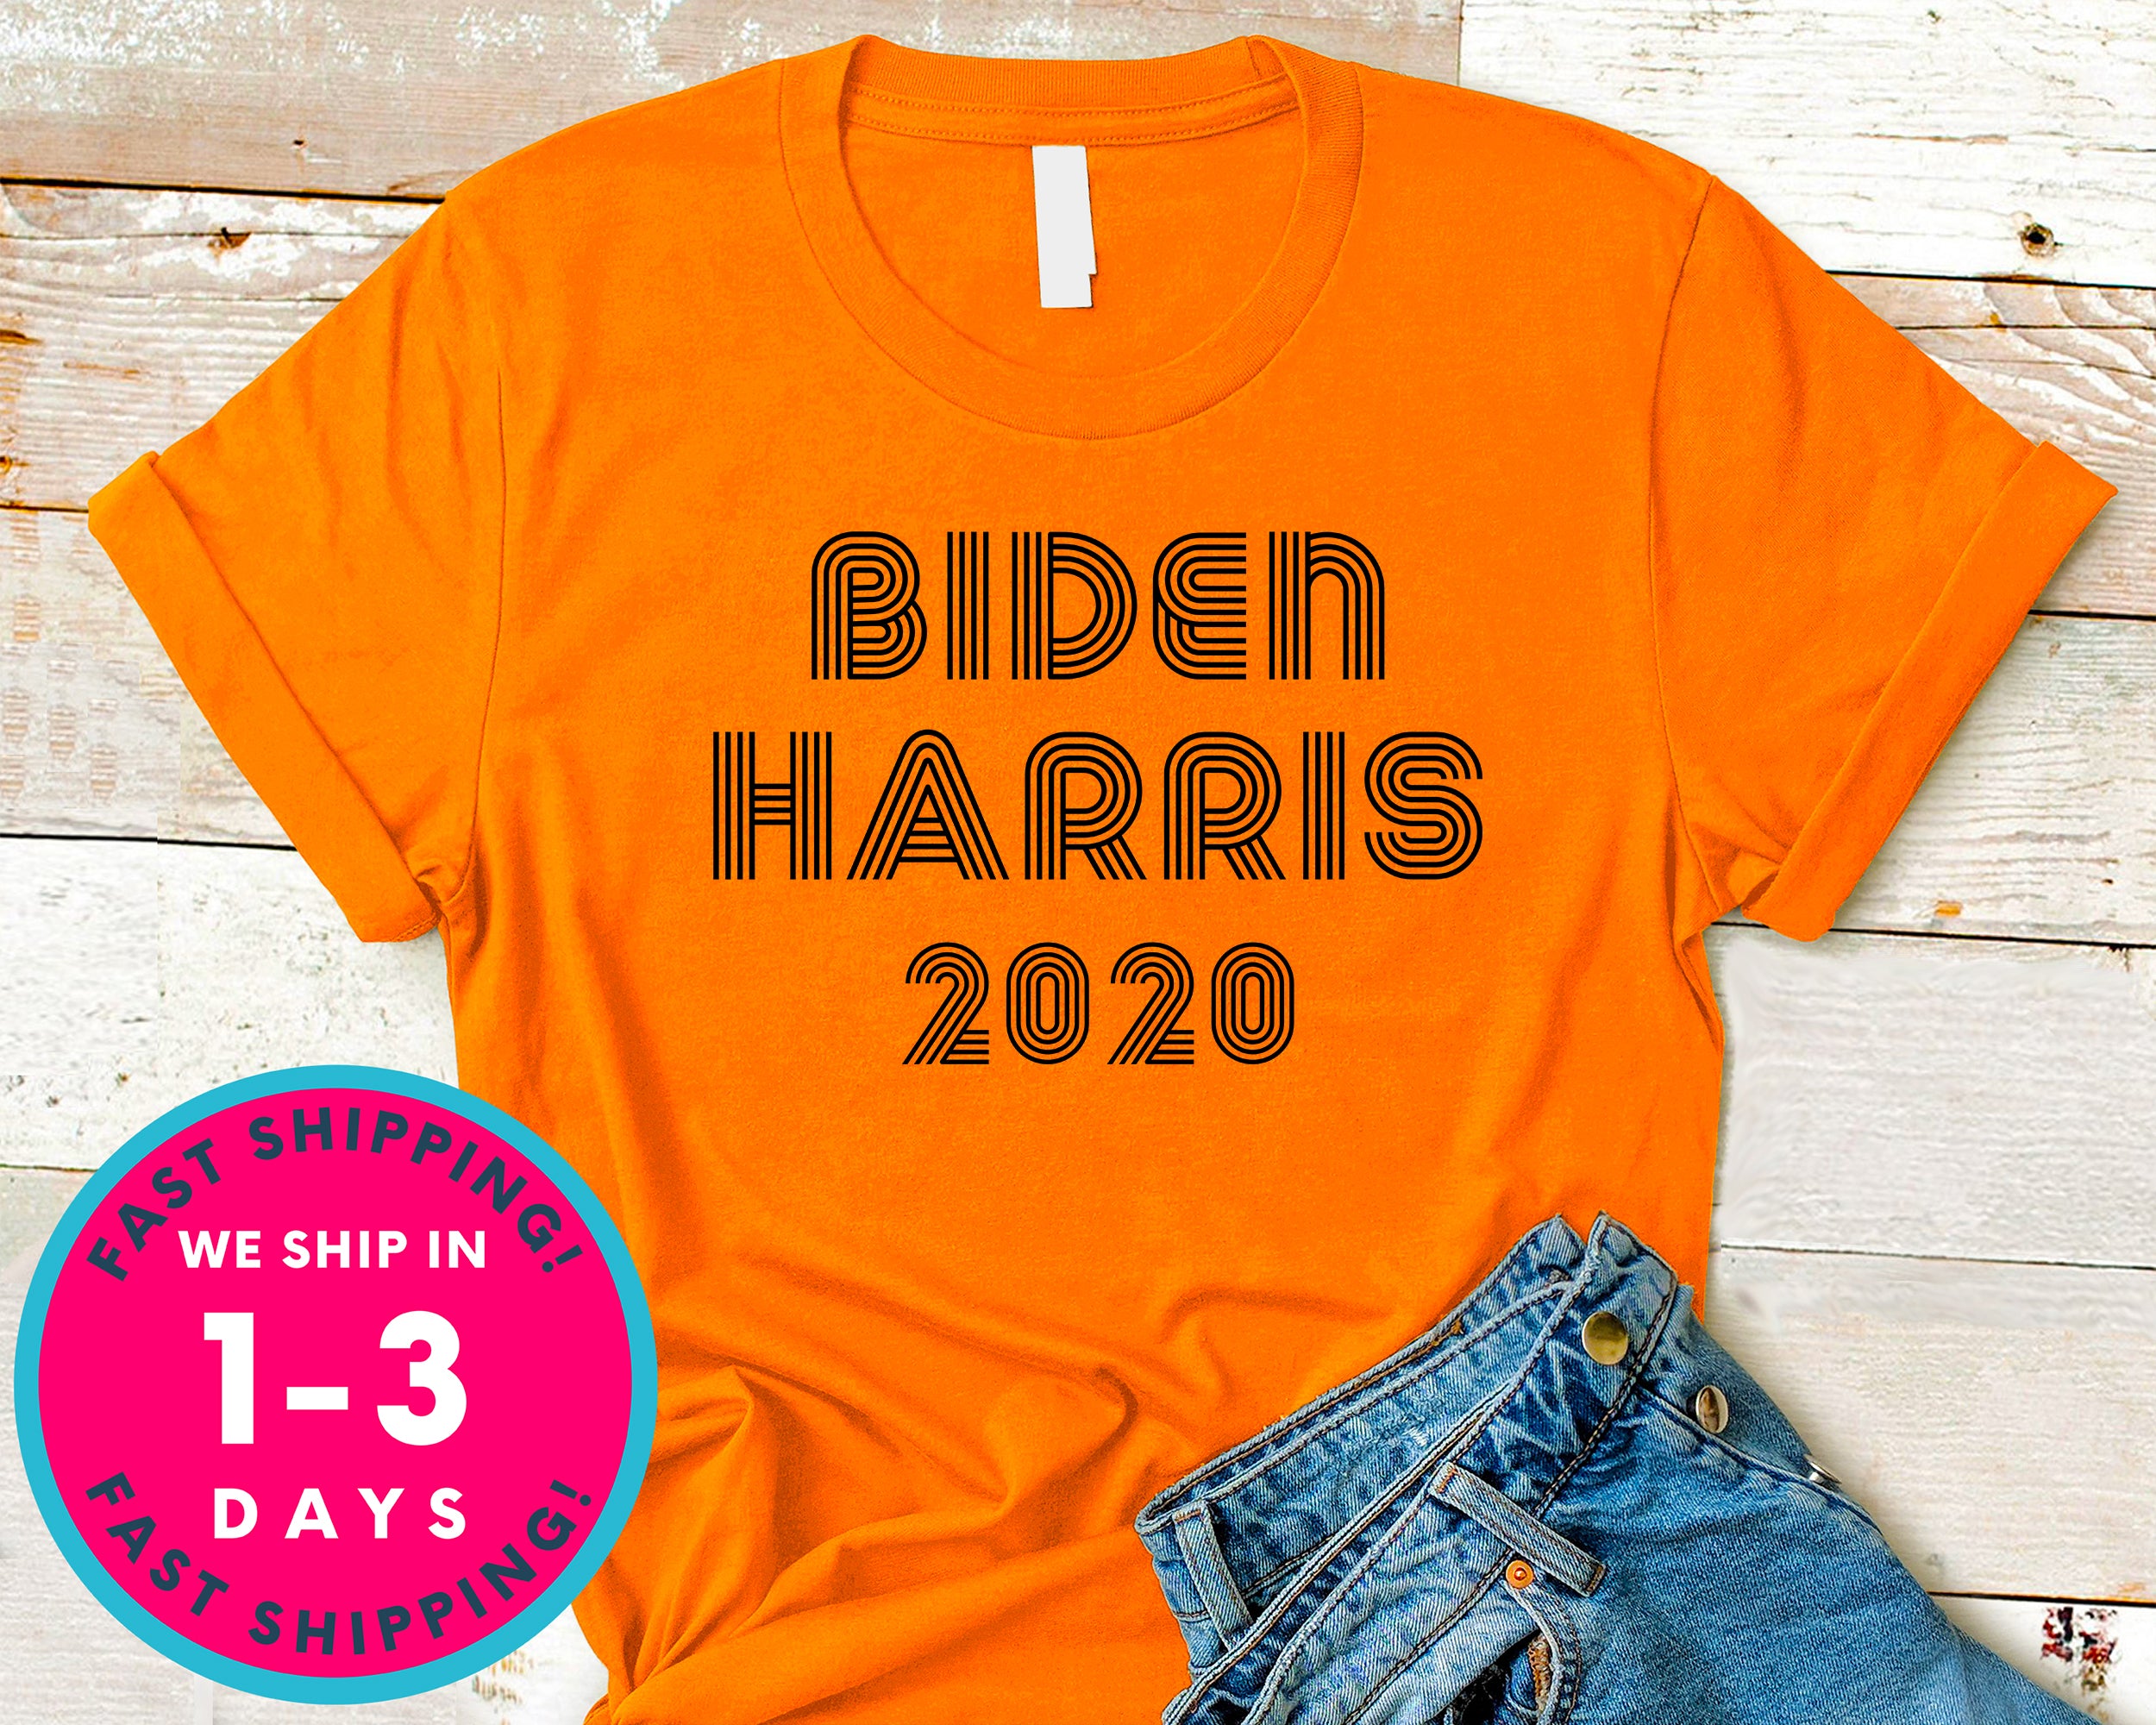 Vote Biden Harris 2020 T-Shirt - Political Activist Shirt